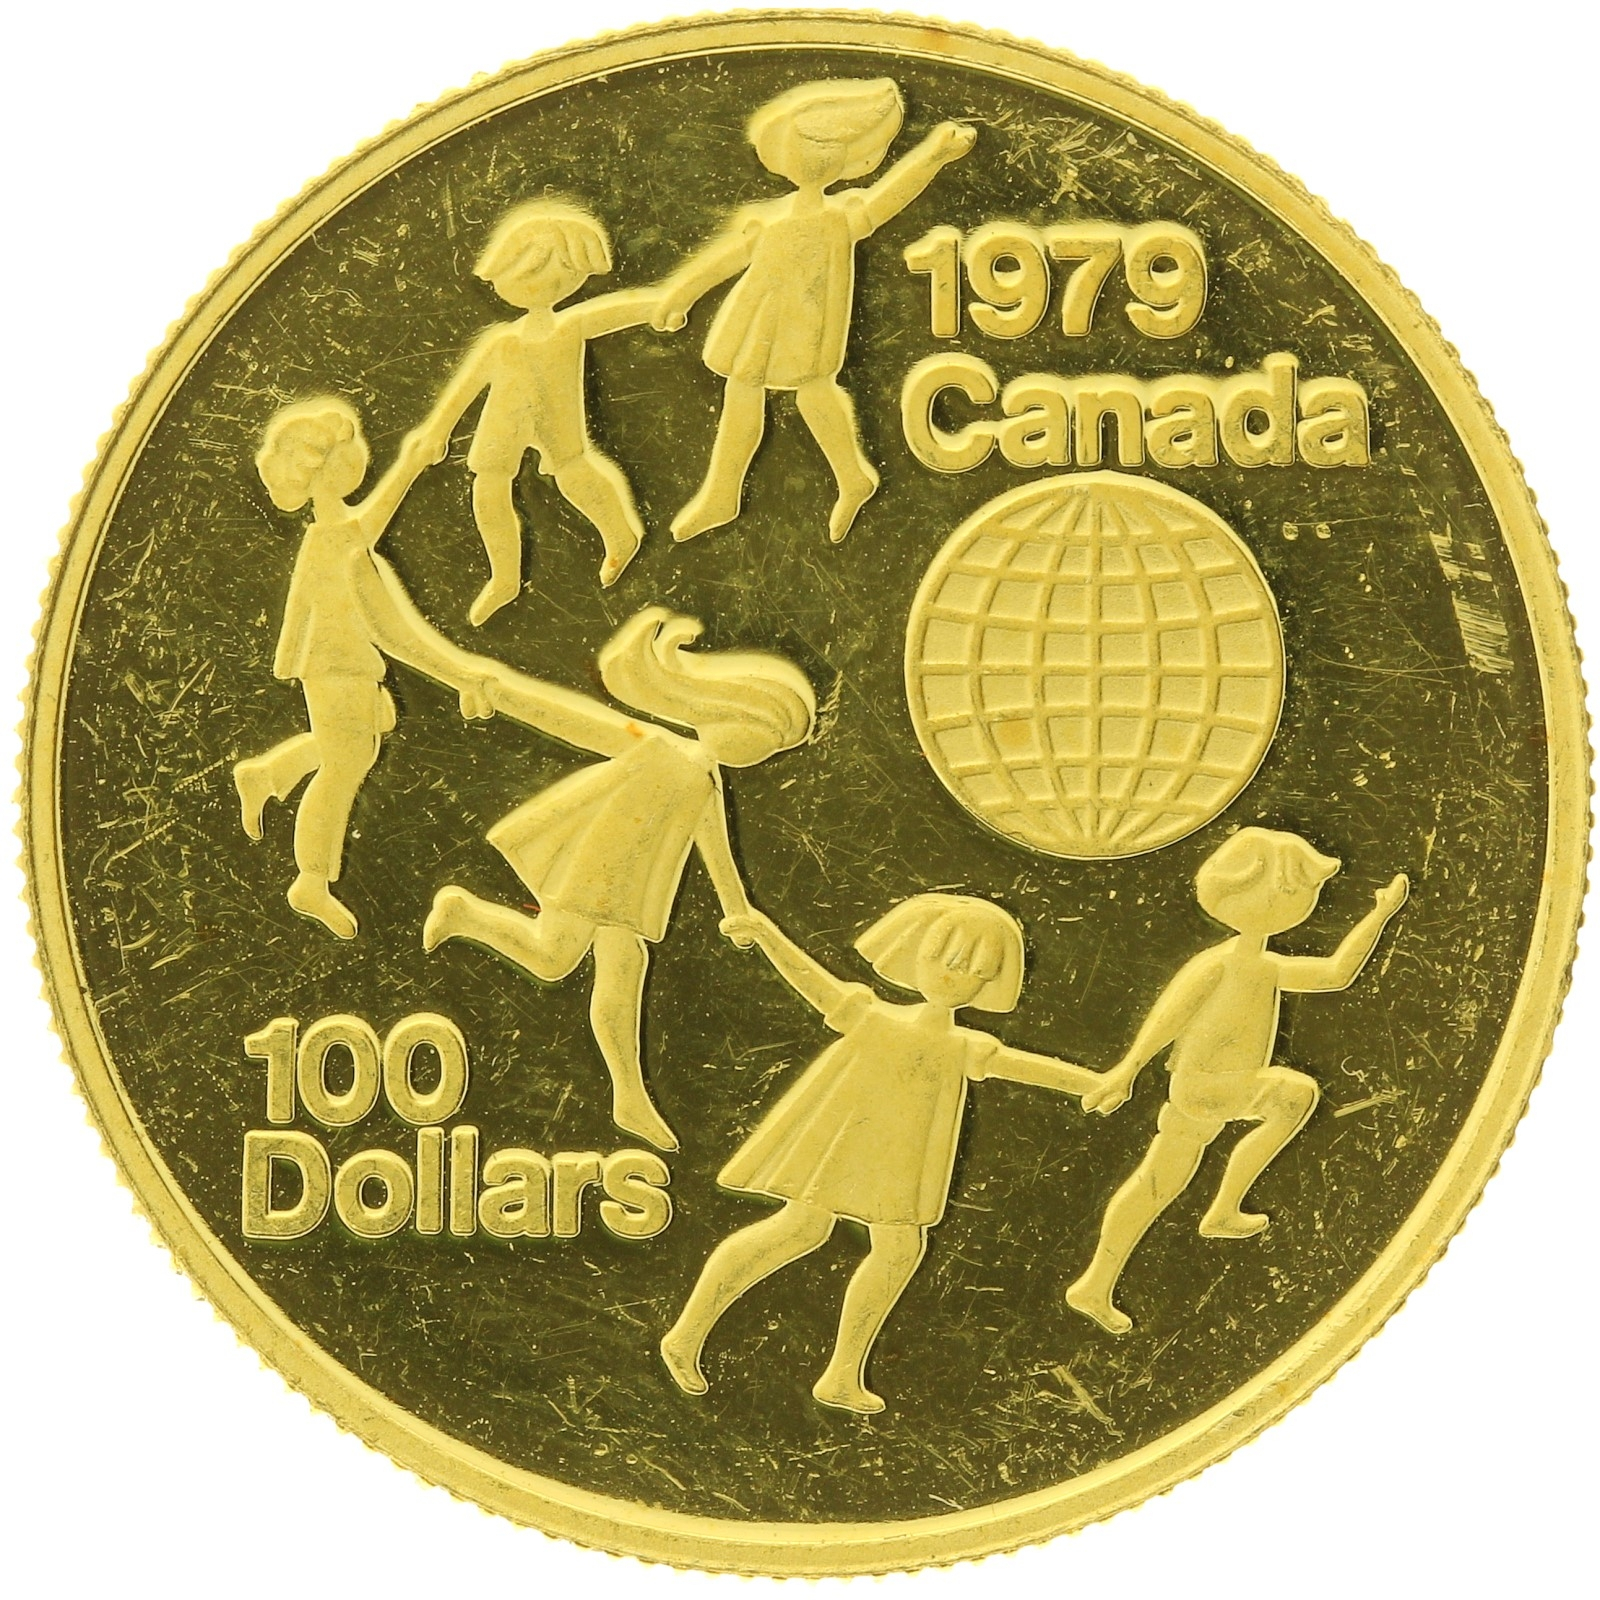 Canada - 100 Dollars - 1979 - Elizabeth II - International Year of The Child - 1/2oz